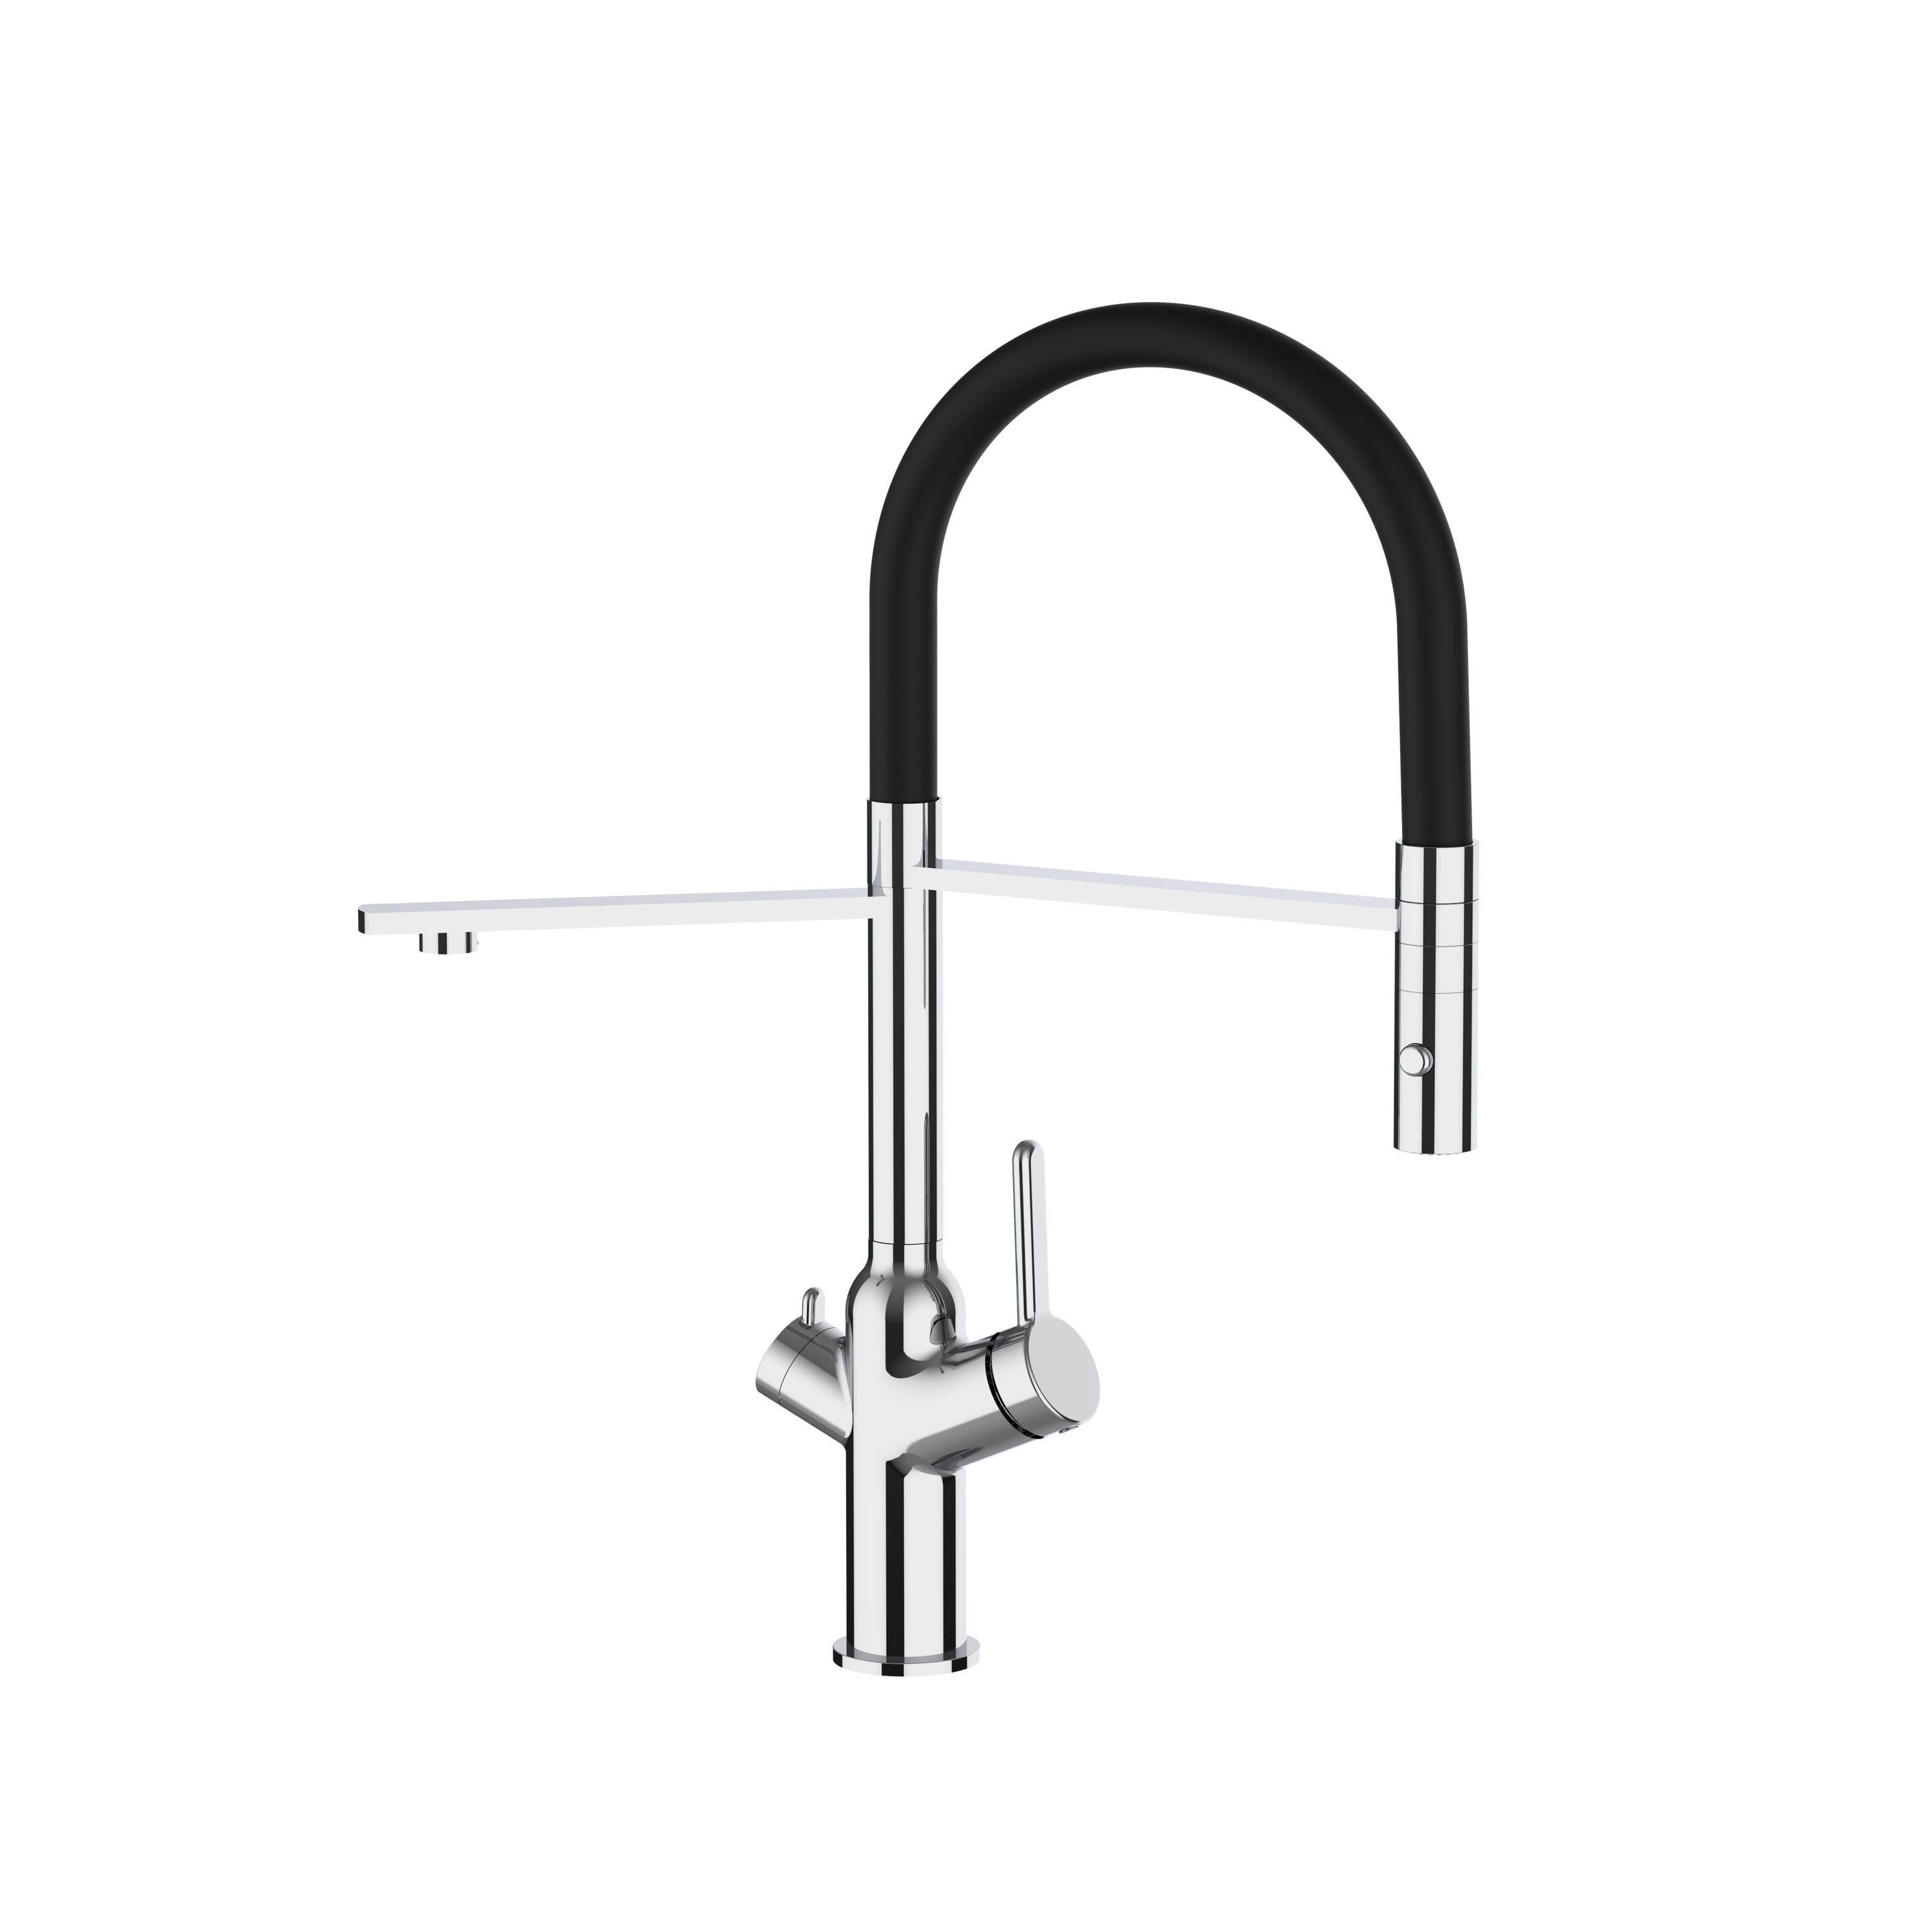 Grifo de cocina 3 vías cromado con caño alto giratorio 360° - muelle  flexible y ducha 2 chorros - doble conducto para sistemas de filtro agua